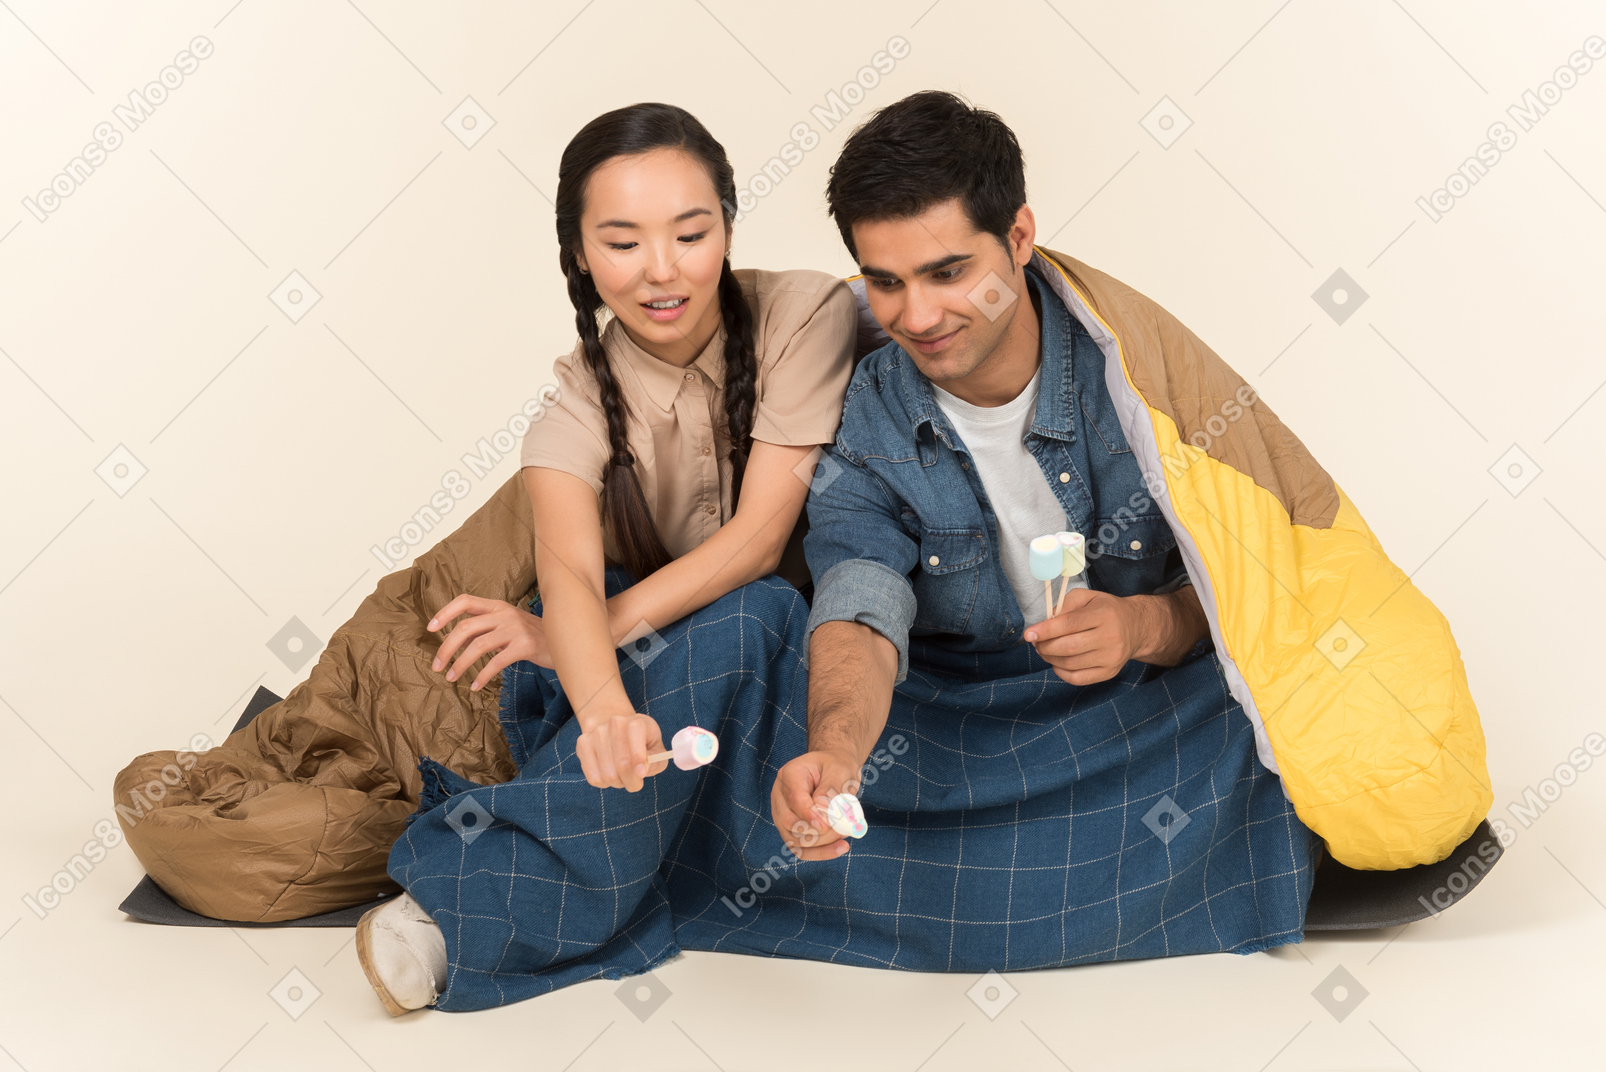 Jeune couple interracial assis dans un sac de couchage et tenant des guimauves